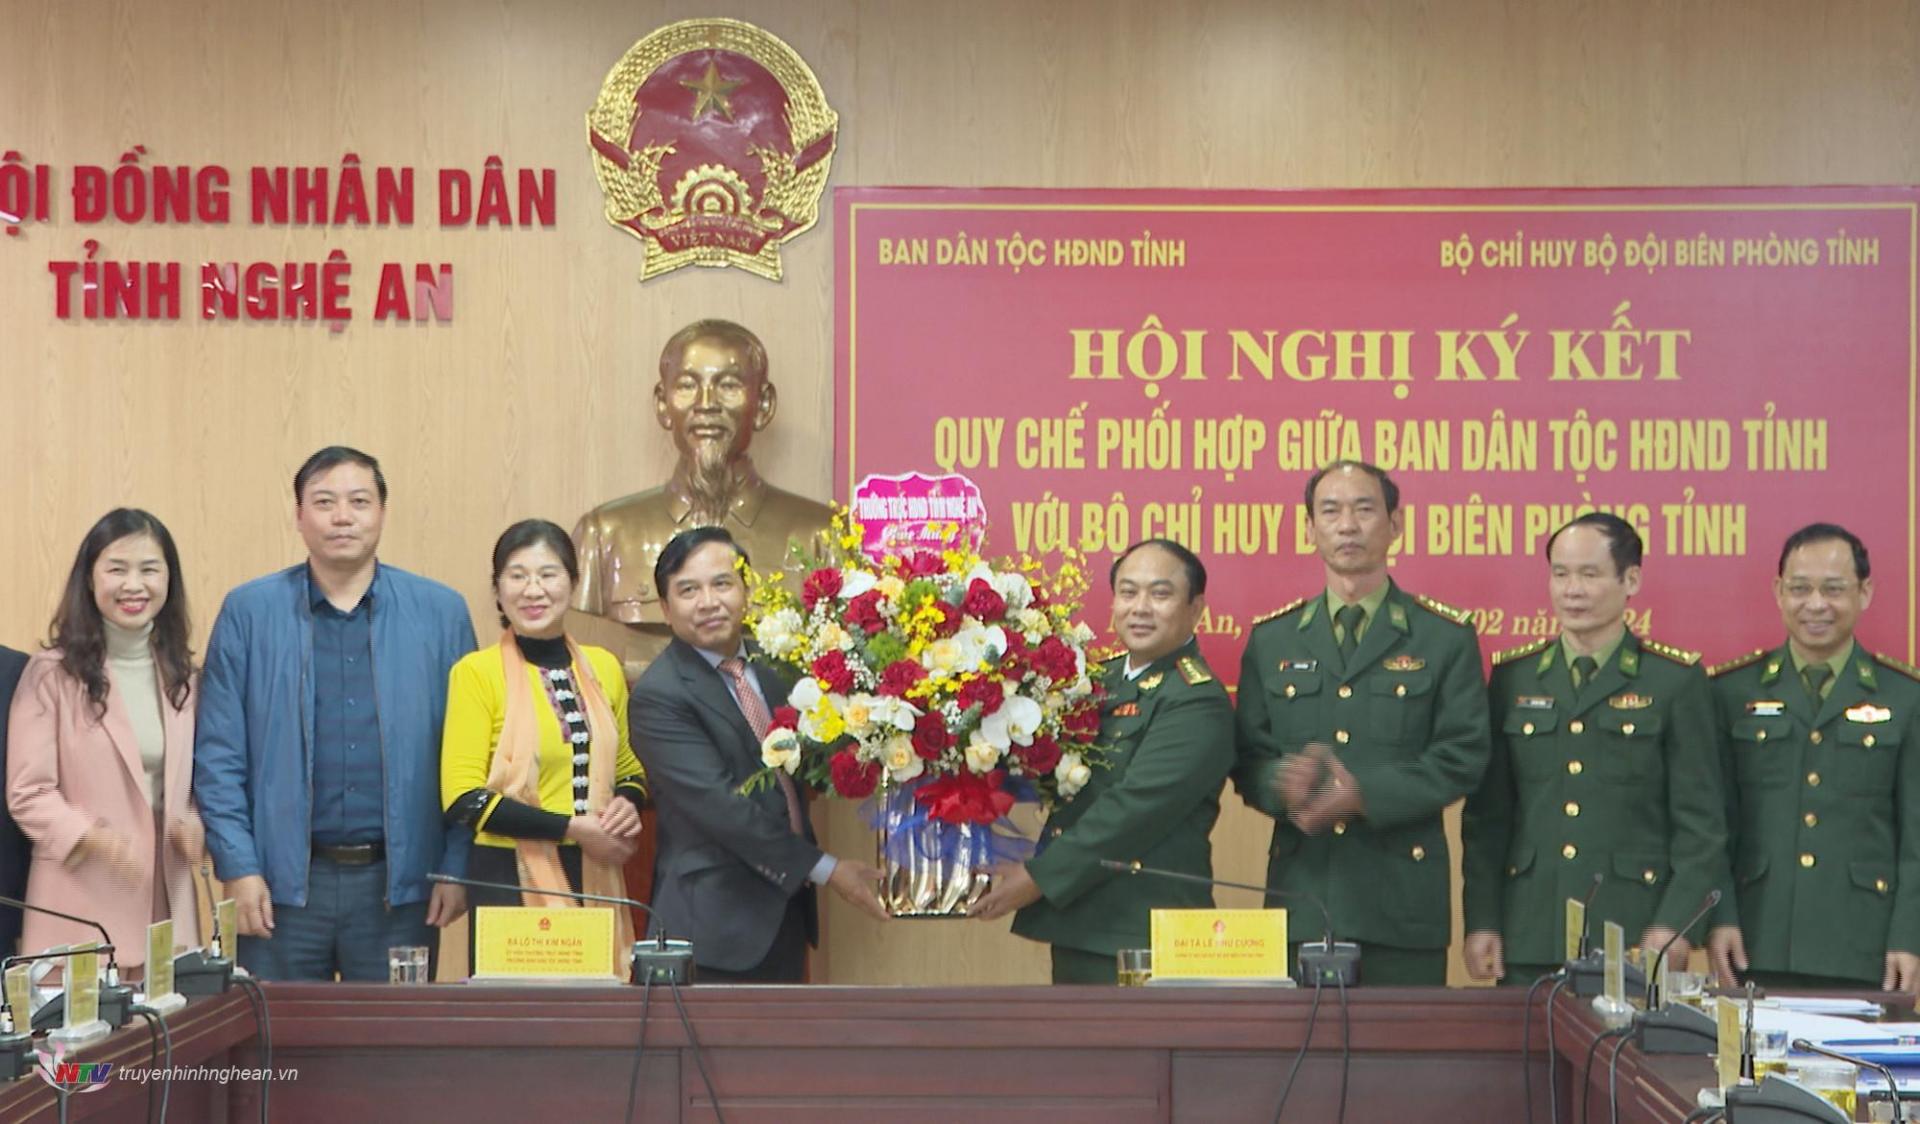 Phó Chủ tịch HĐND tỉnh Nguyễn Như Khôi trao lẵng hoa chúc mừng Bộ Chỉ huy BĐBP tỉnh nhân kỷ niệm 65 năm ngày thành lập lực lượng BĐBP Việt Nam.